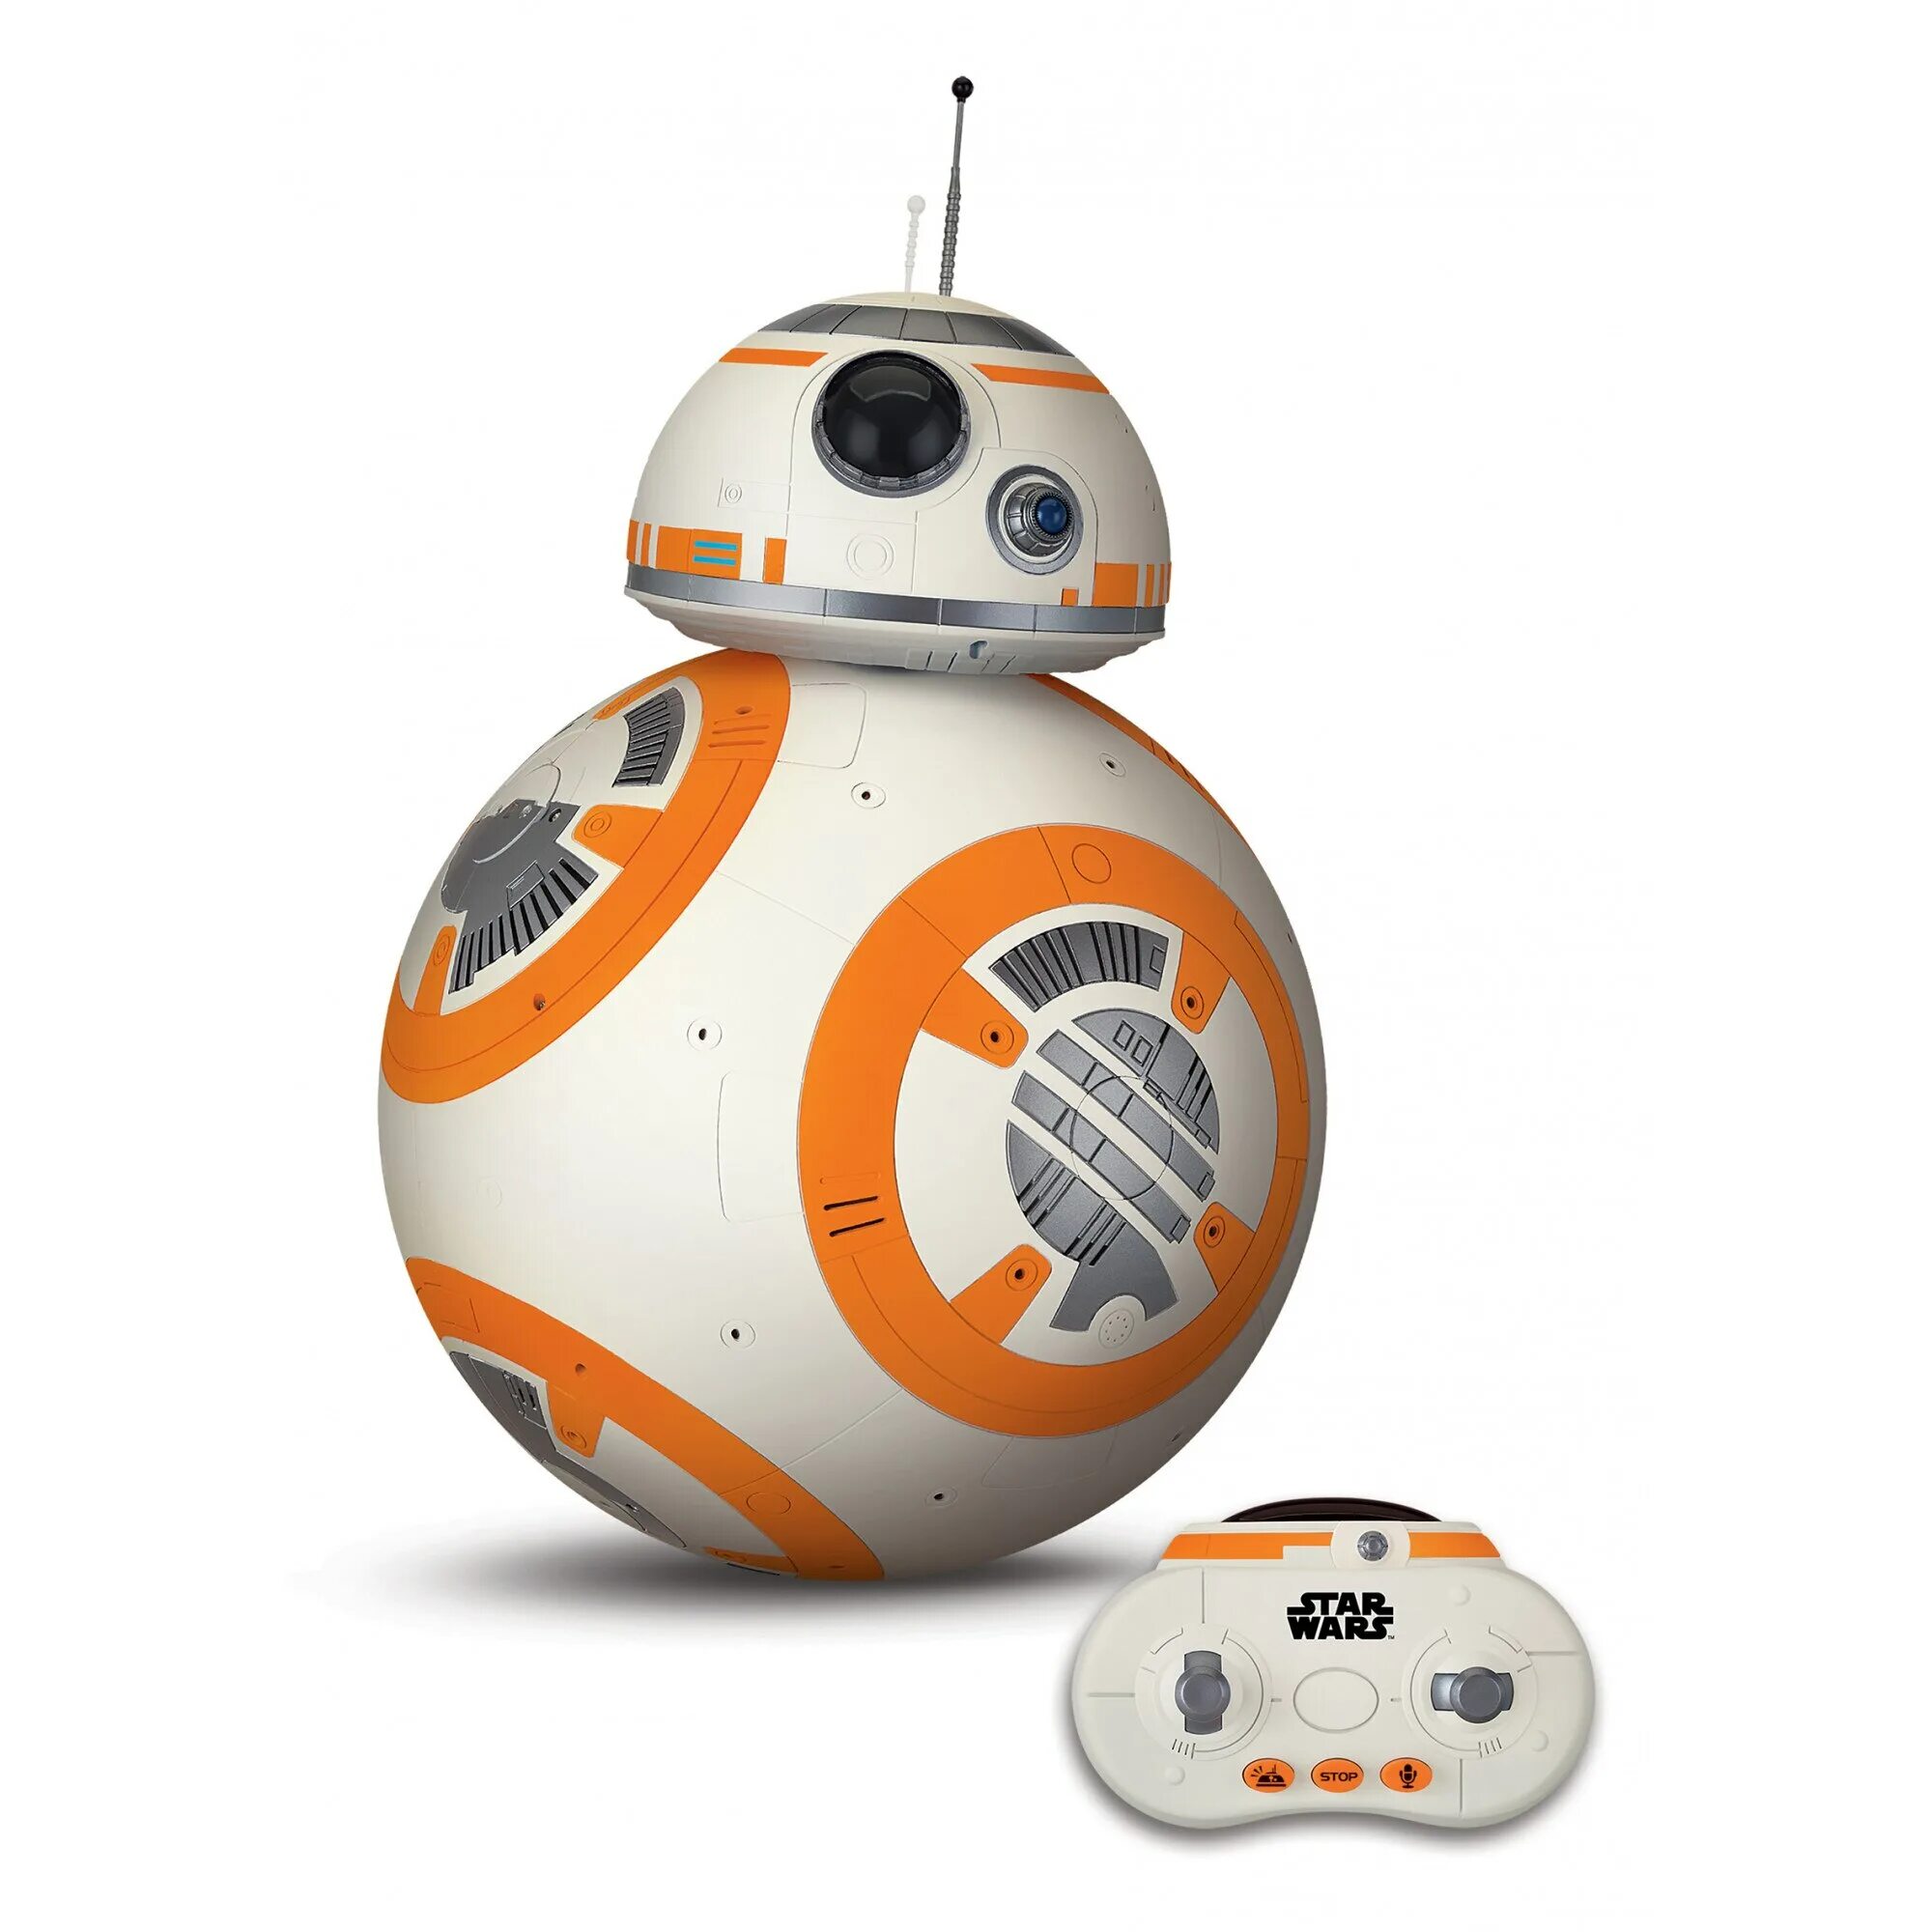 Вв 8. BB-8 (дроид). Робот Star Wars Sphero bb8. BB-8 Sphero. Дроид из Звездных войн BB-8.